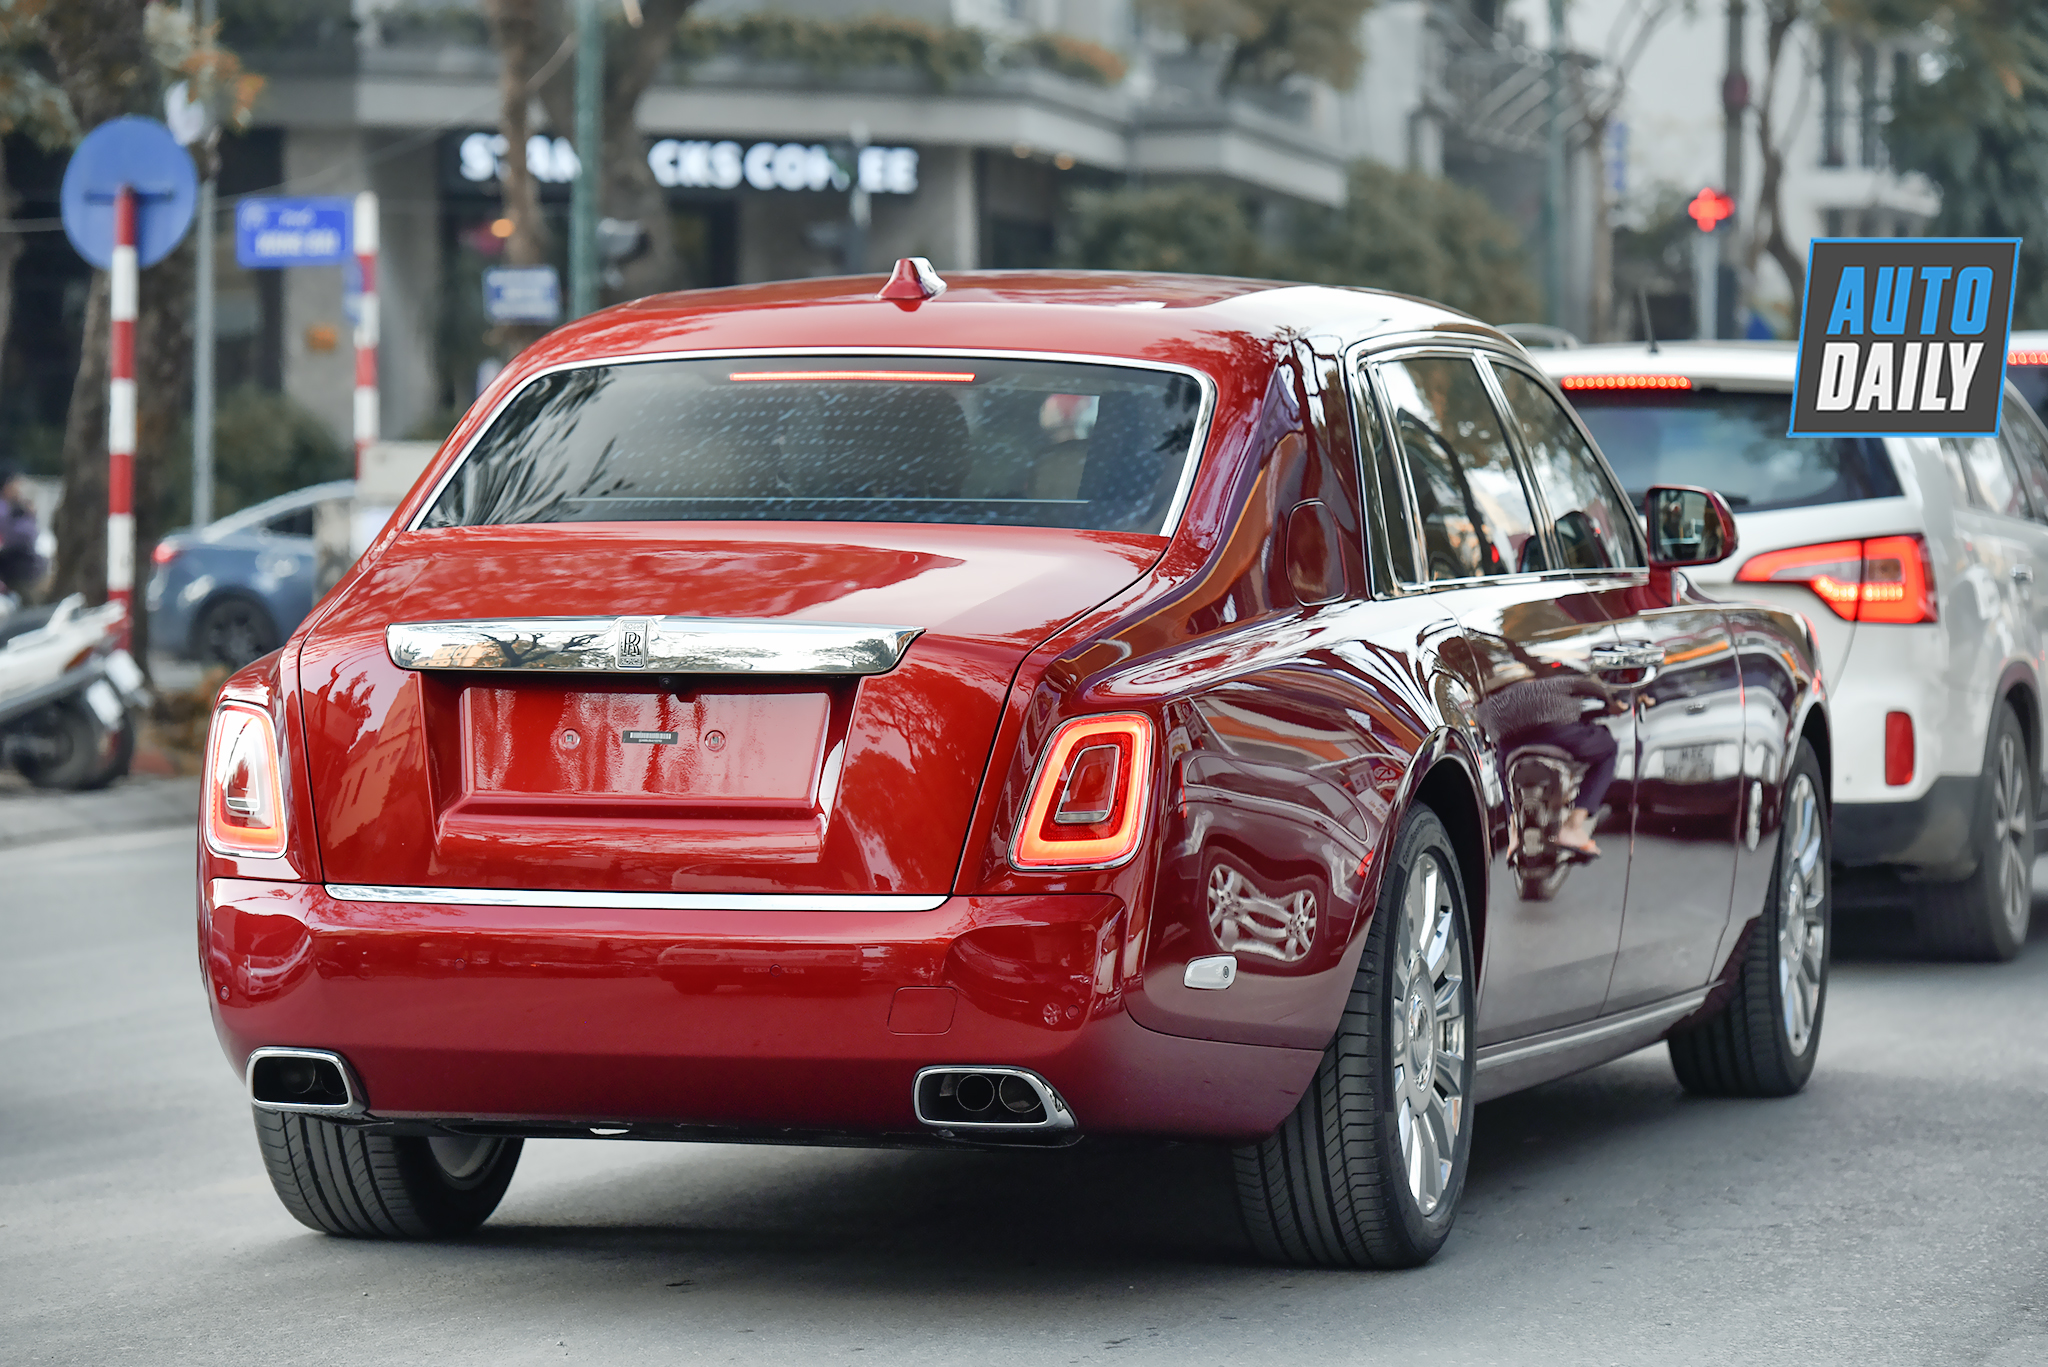 RollsRoyce Phantom Red  chiếc sedan siêu sang với màu sơn đỏ độc nhất vô  nhị